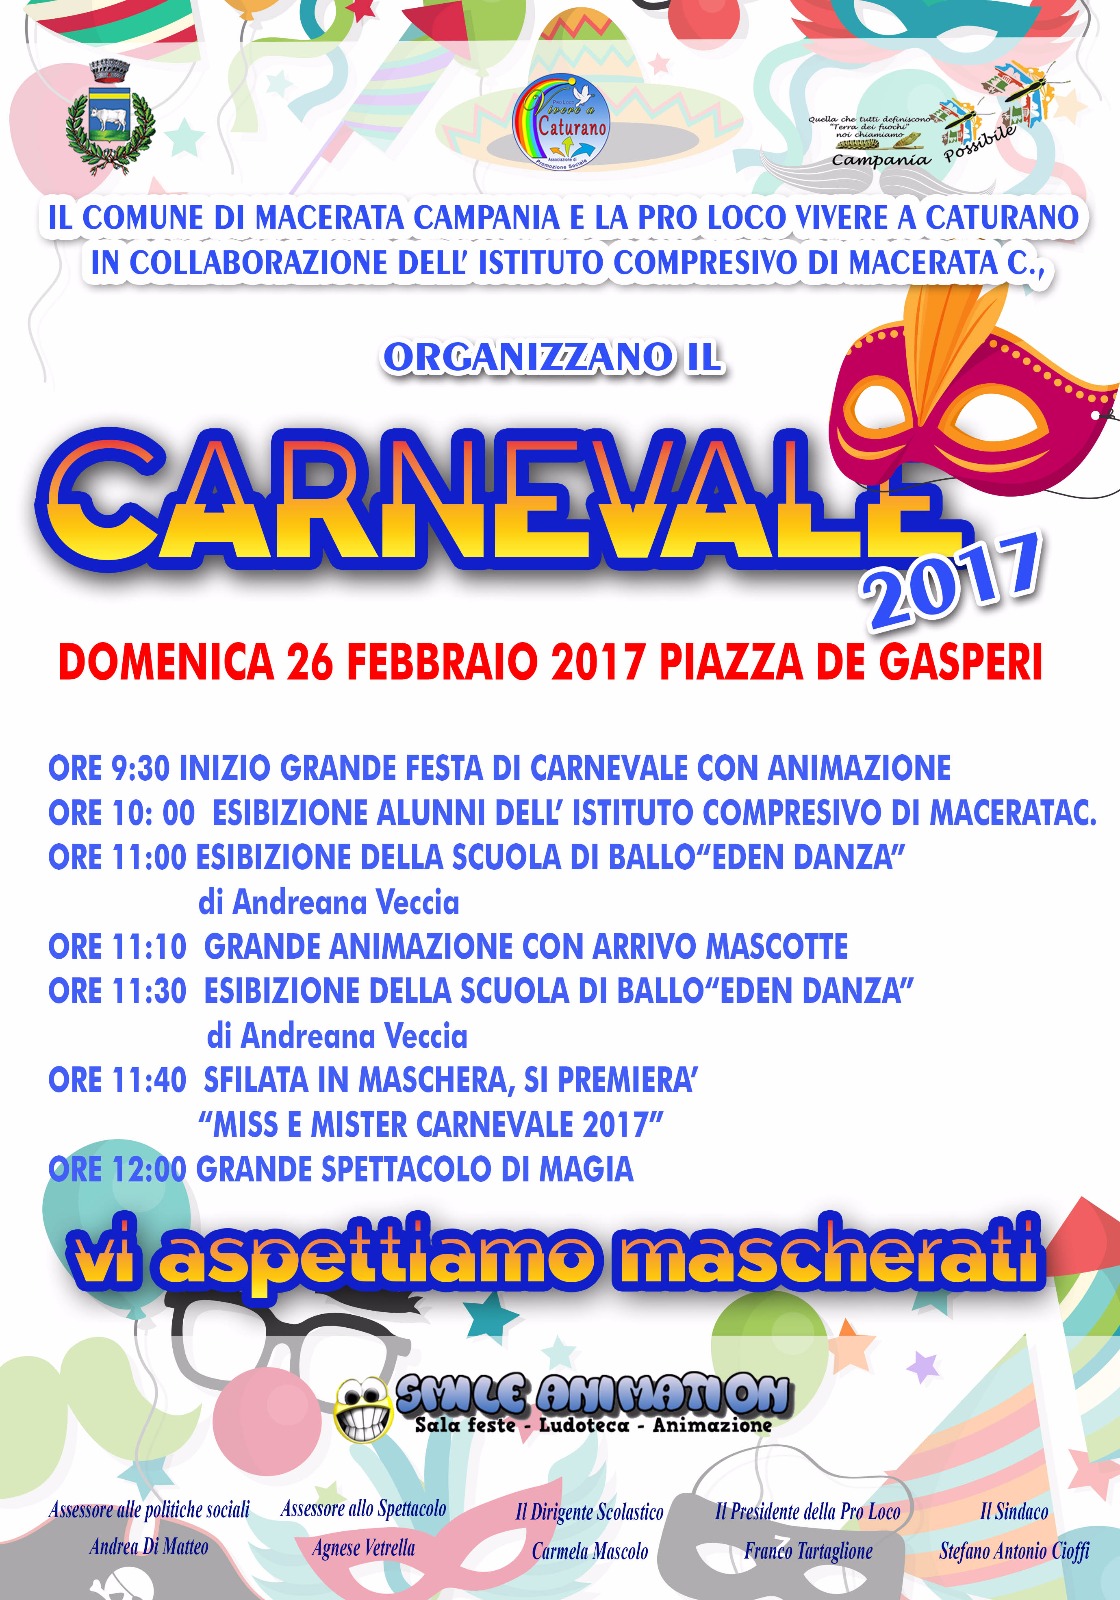  Macerata Campania, ecco l’edizione 2017 del Carnevale: il programma degli eventi